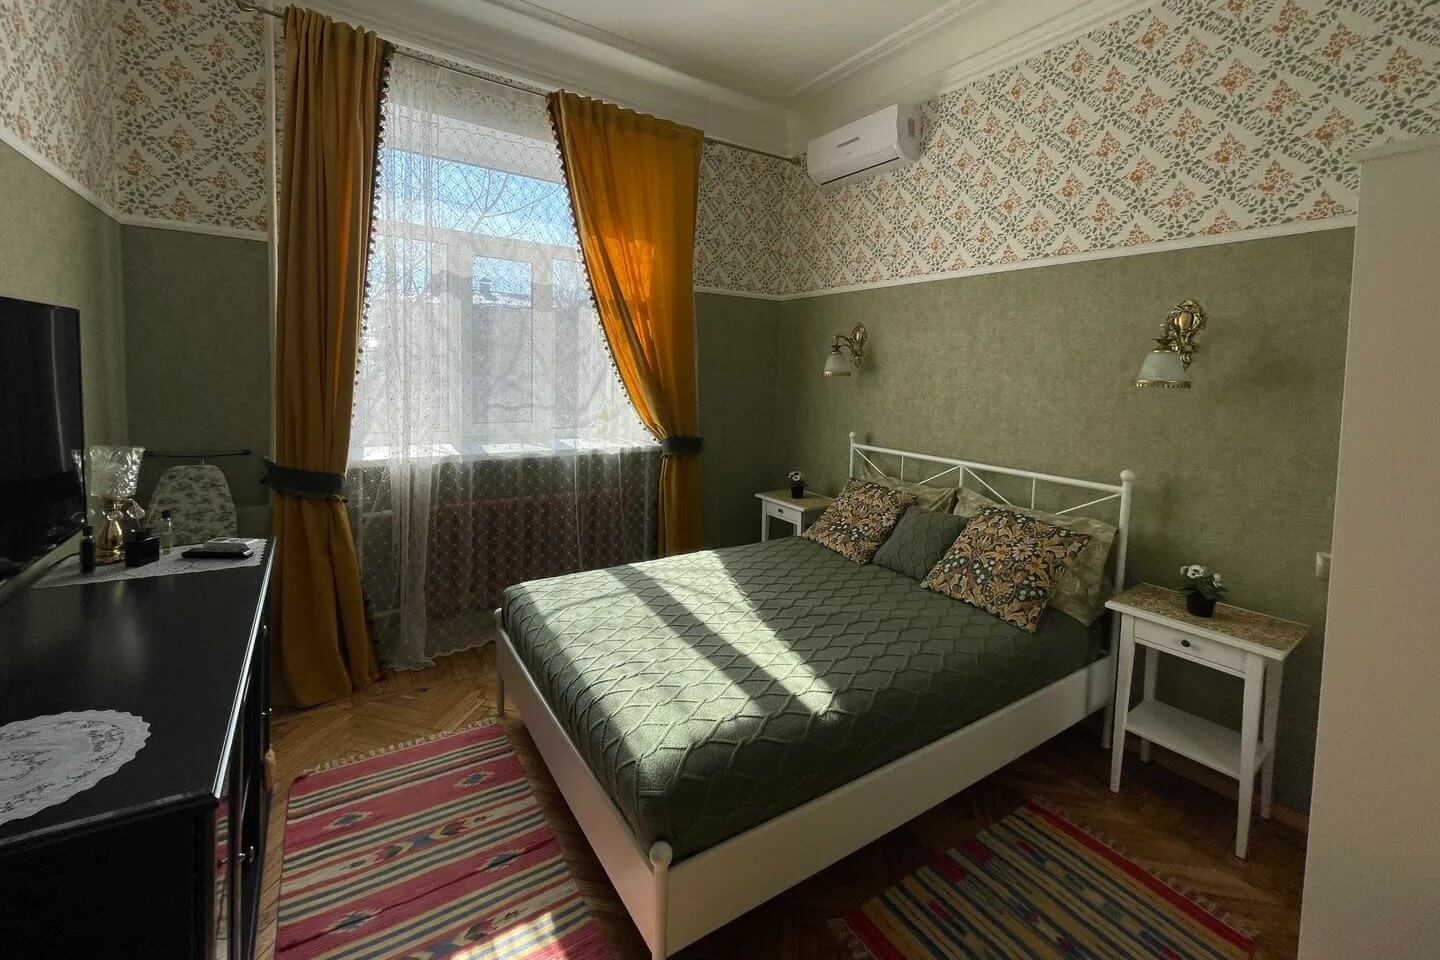 Татарская квартира у Кремля. Цвет интерьера - зеленый.